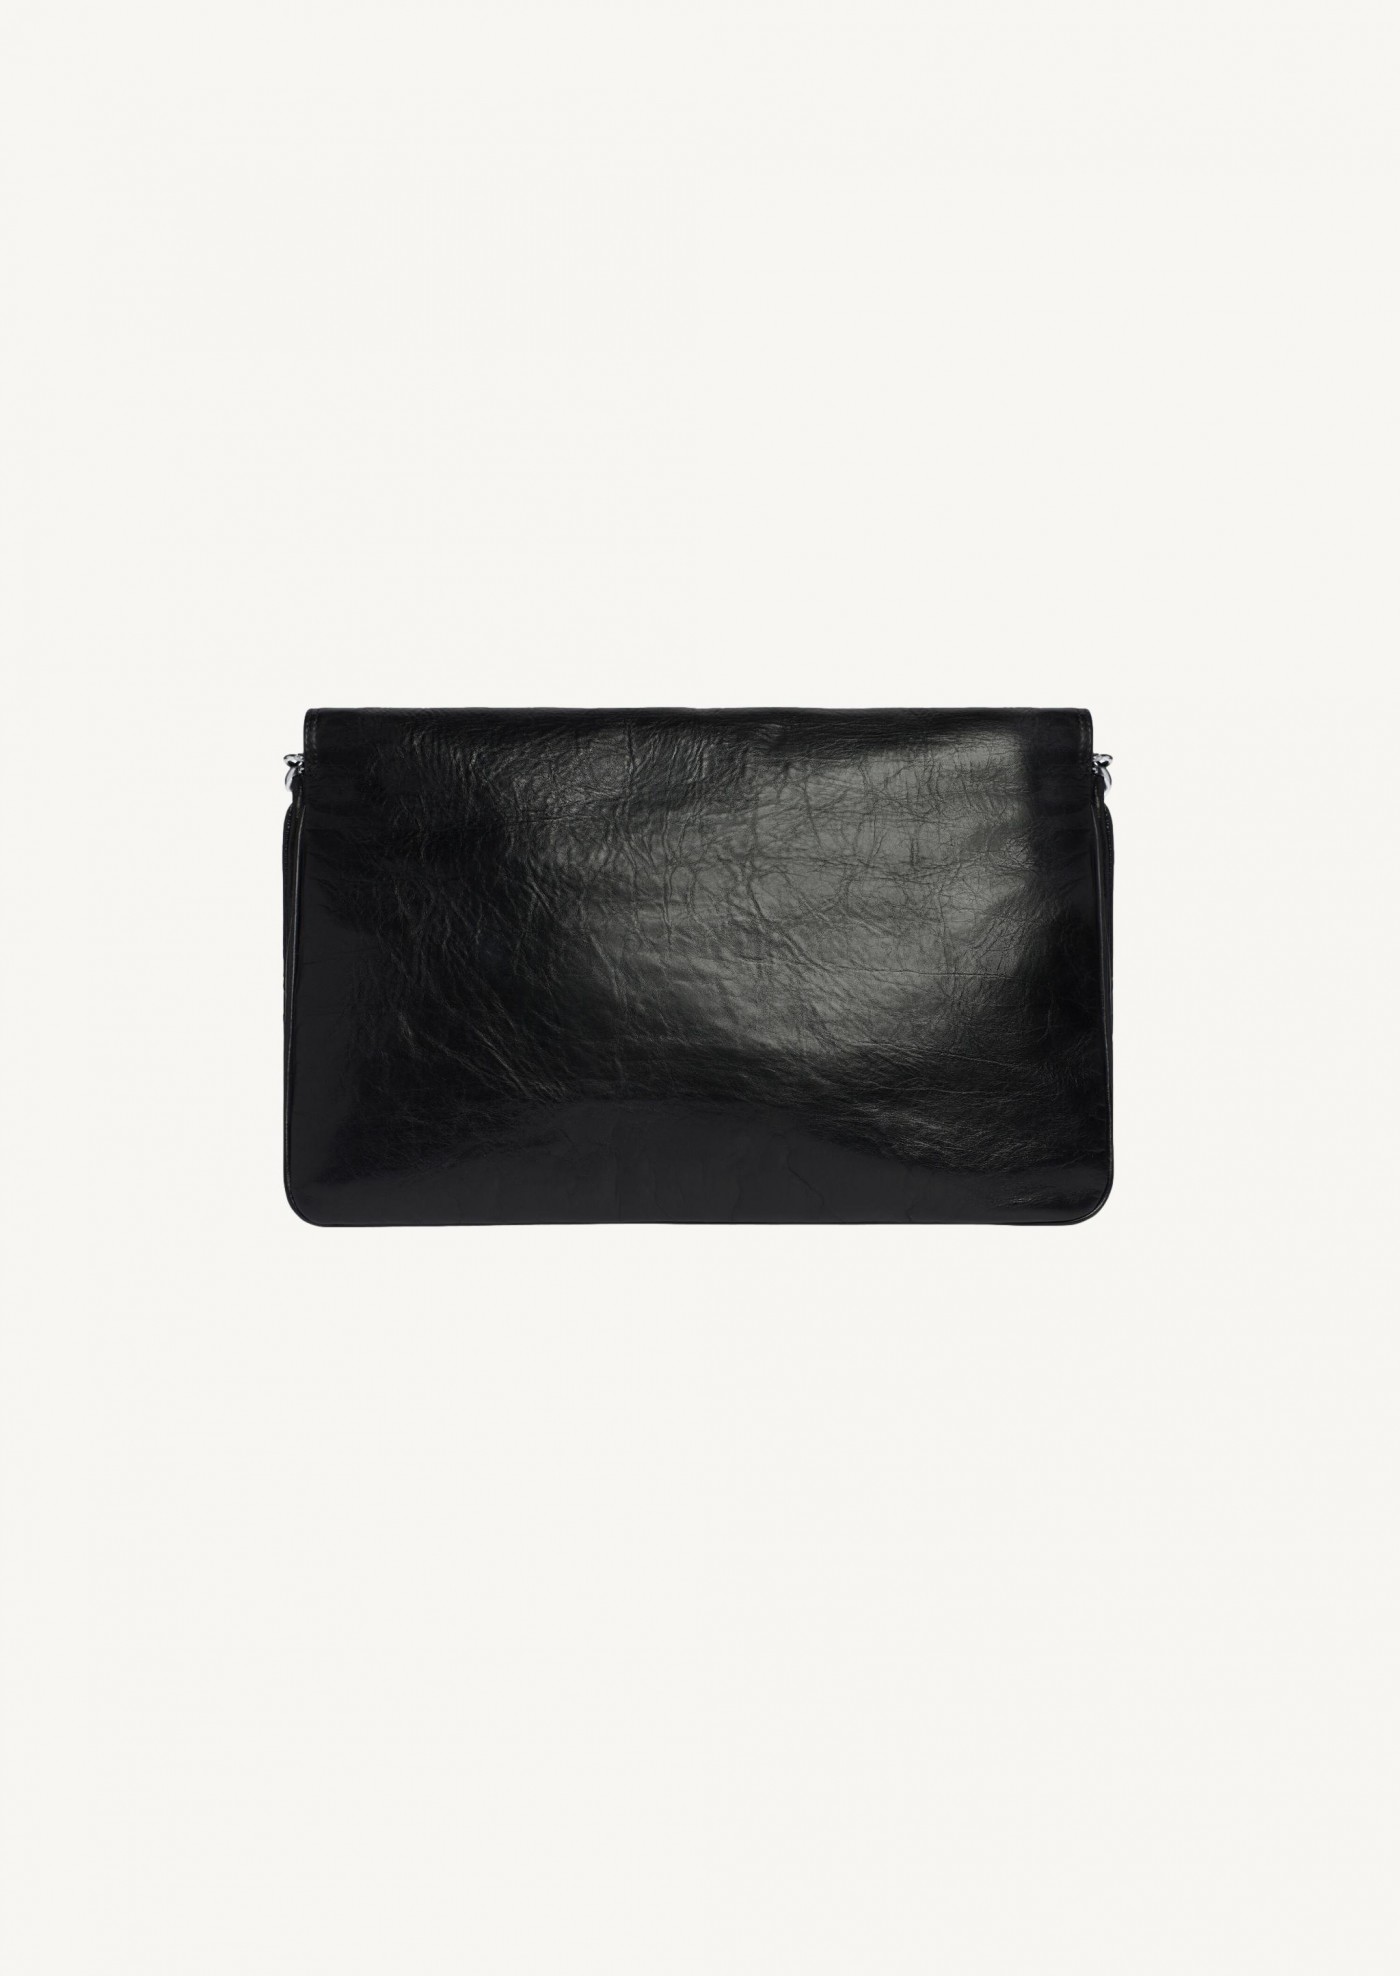 Large soft flap bag in black